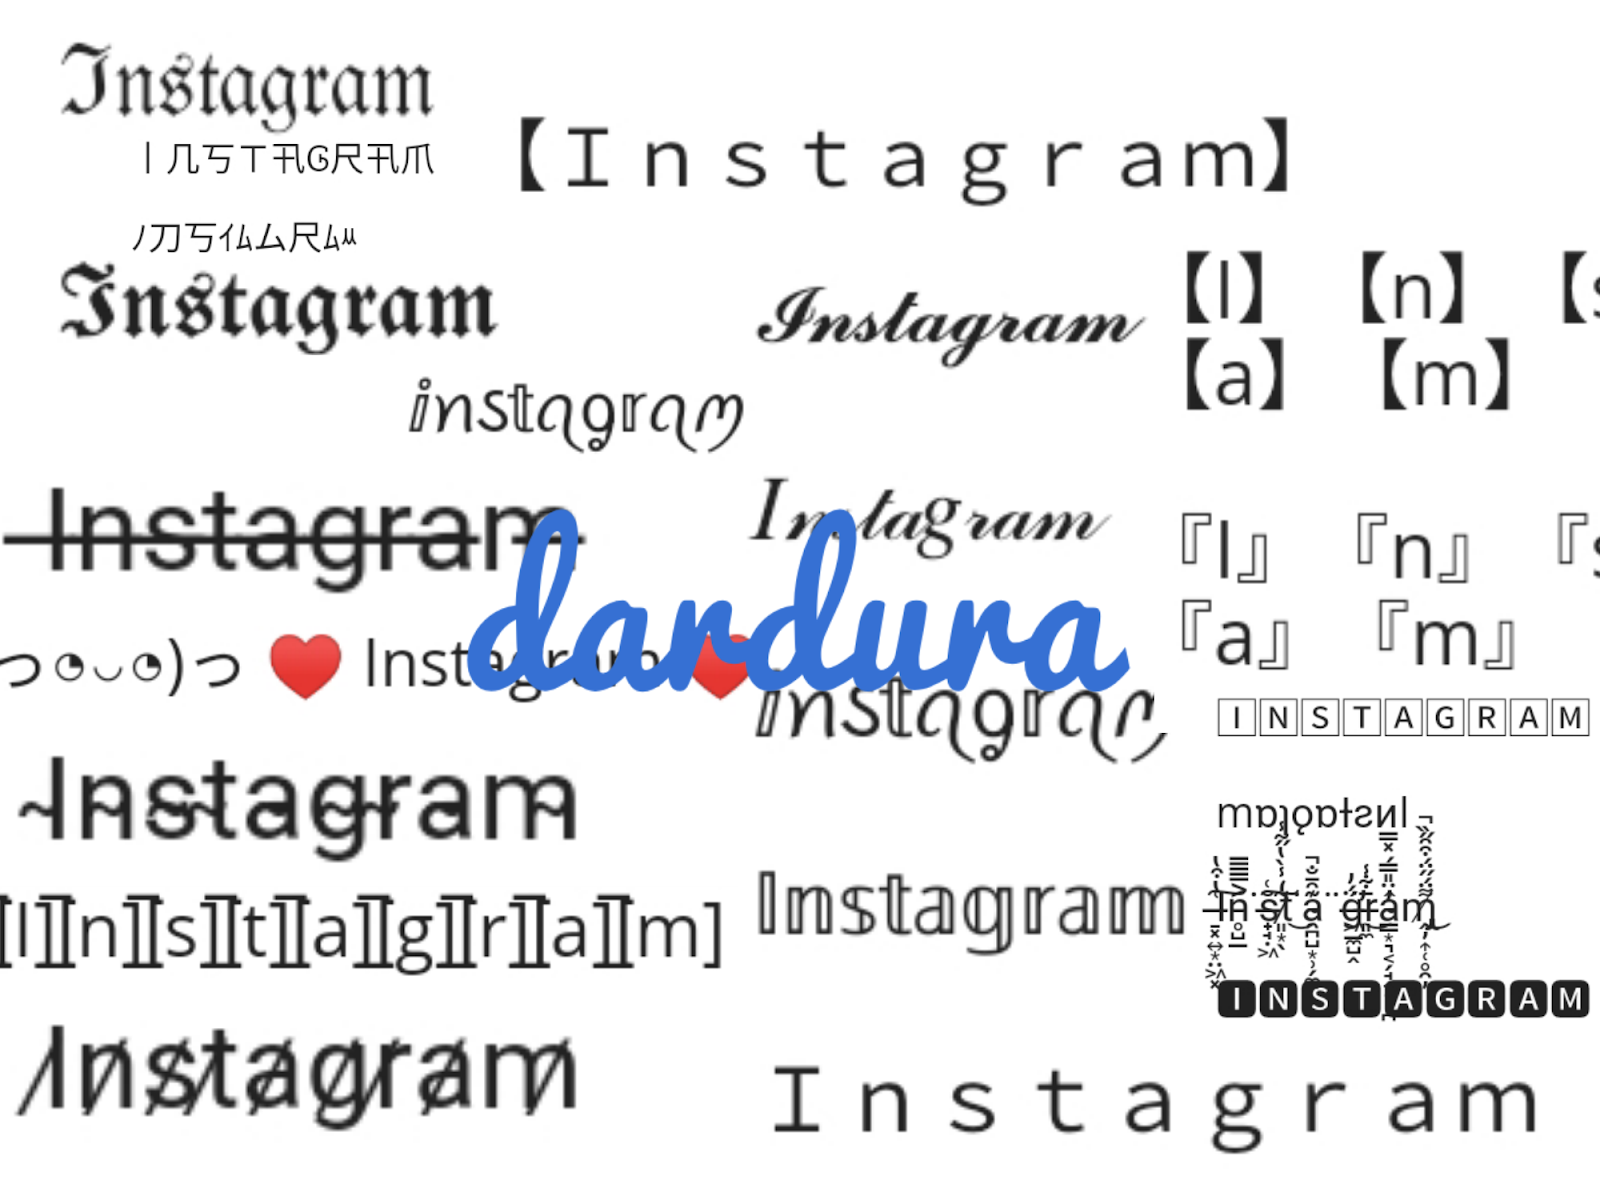 Công cụ tạo font chữ Instagram trực tuyến là một công cụ tuyệt vời để giúp bạn tạo ra những câu chữ và font chữ đẹp trên Instagram. Nó không chỉ đơn thuần là một công cụ, mà còn là một nghệ thuật để bạn thể hiện bản thân và thu hút được nhiều người theo dõi. Với nó, bạn có thể tạo ra những bức ảnh và tiểu phẩm độc đáo, nổi bật trên mạng.